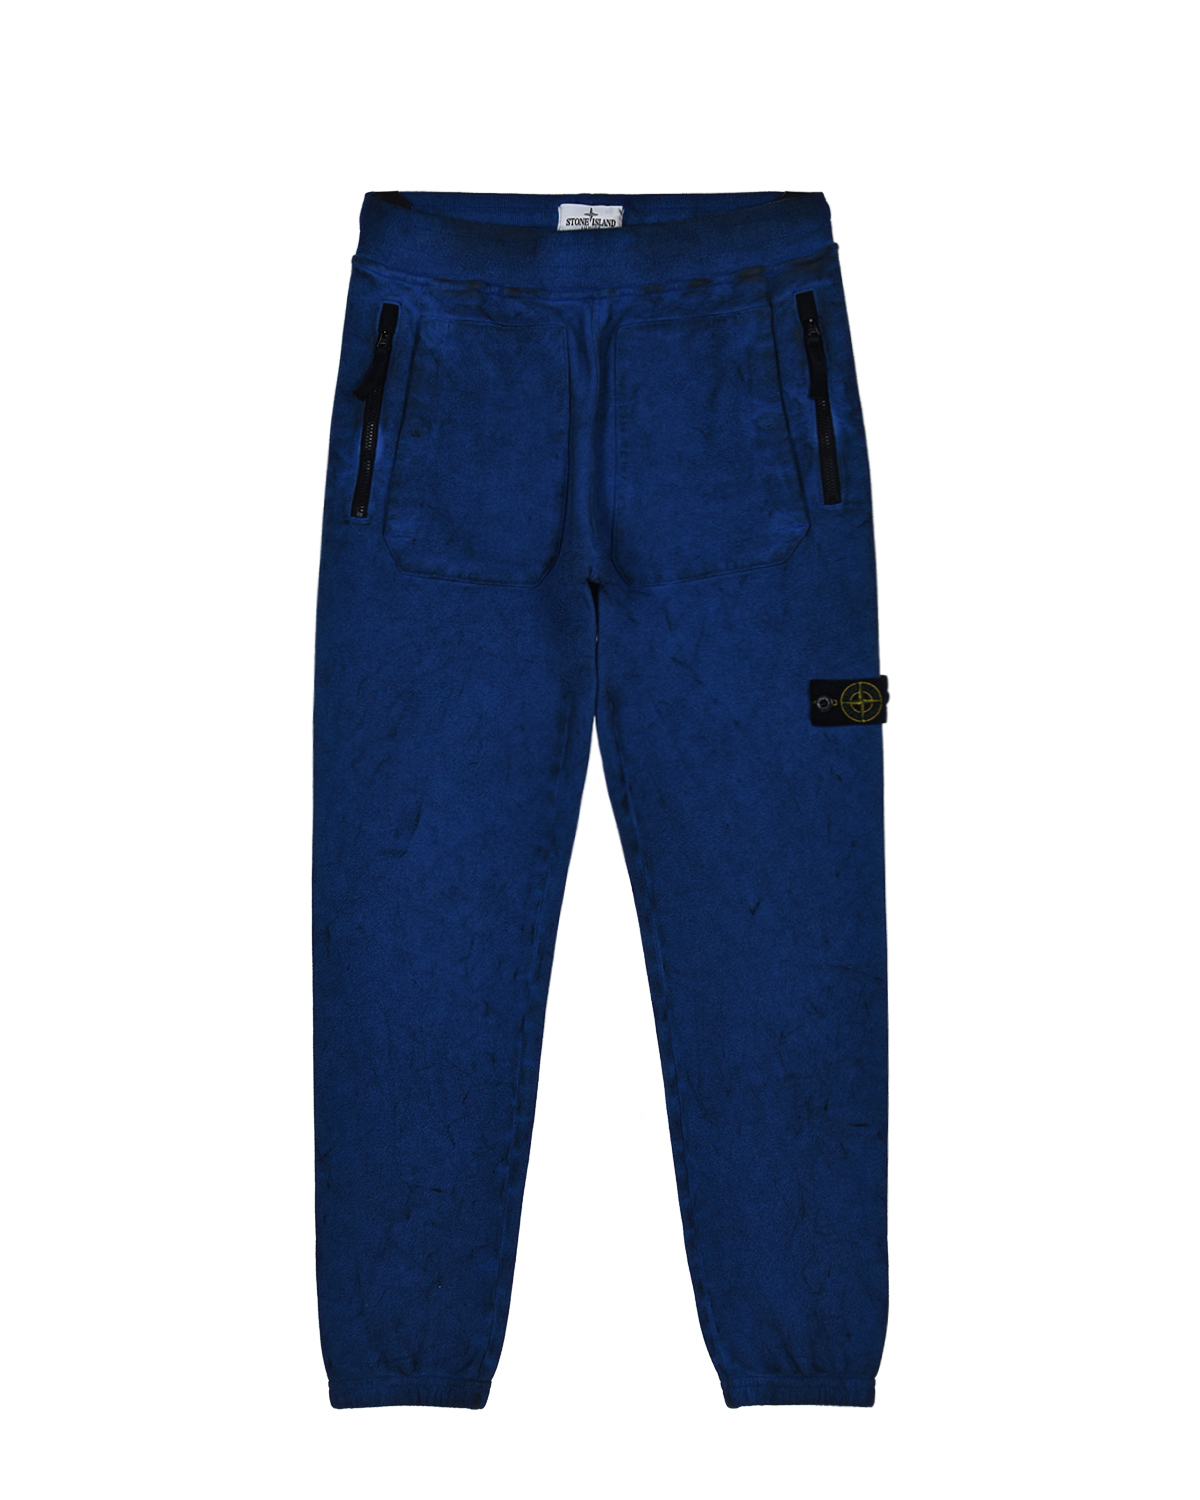 Купить Синие спортивные брюки Stone Island детские, Синий, 100%хлопок